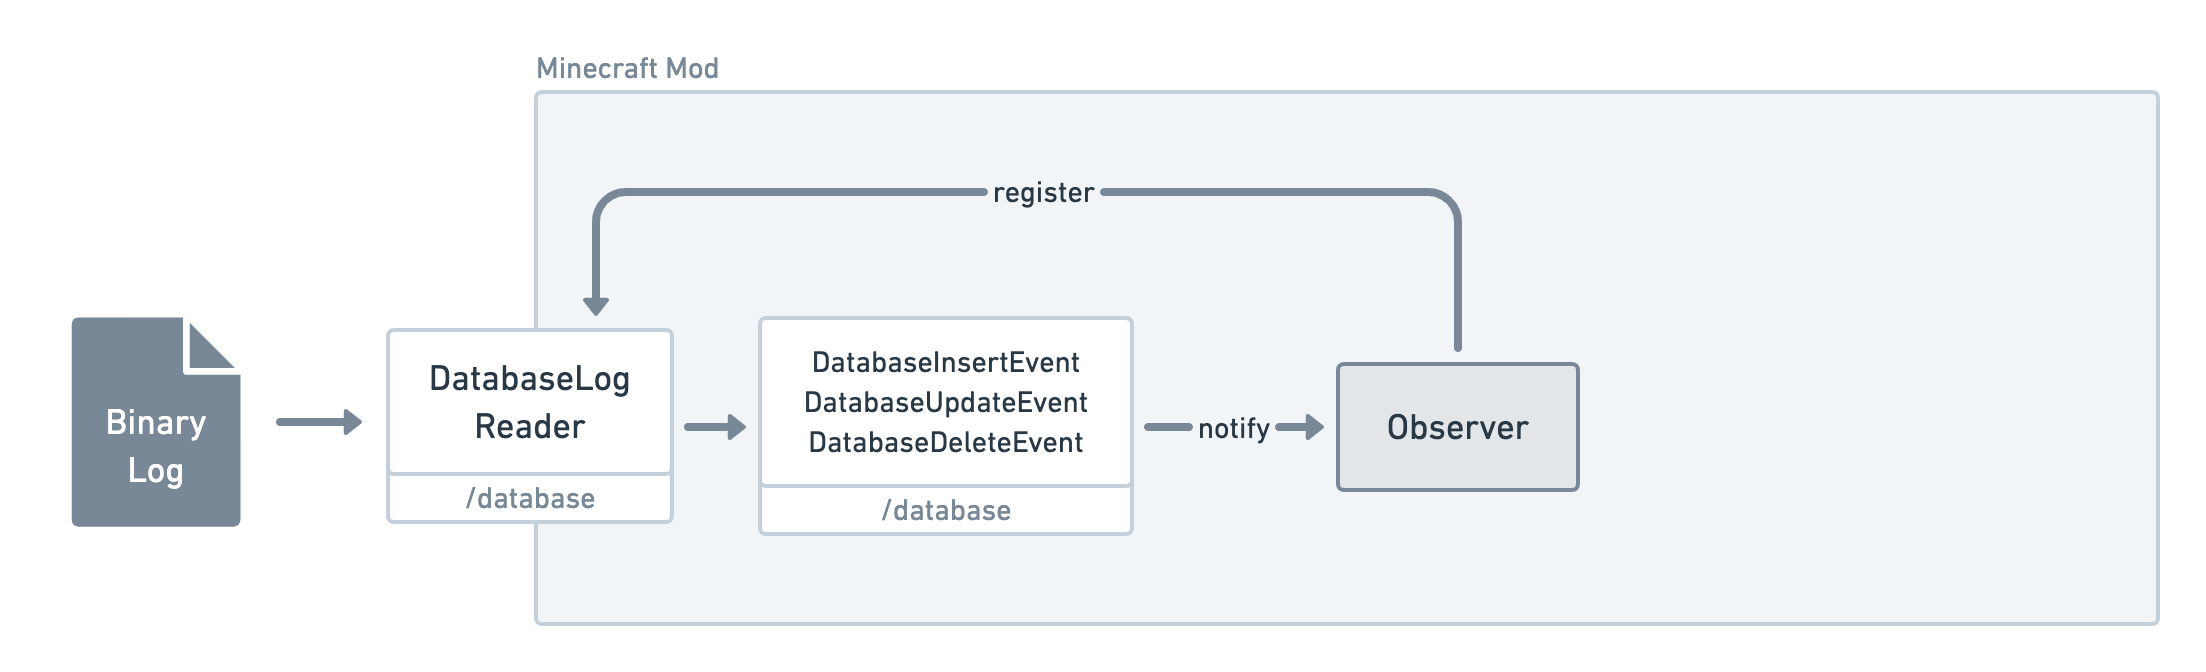 Database package diagram